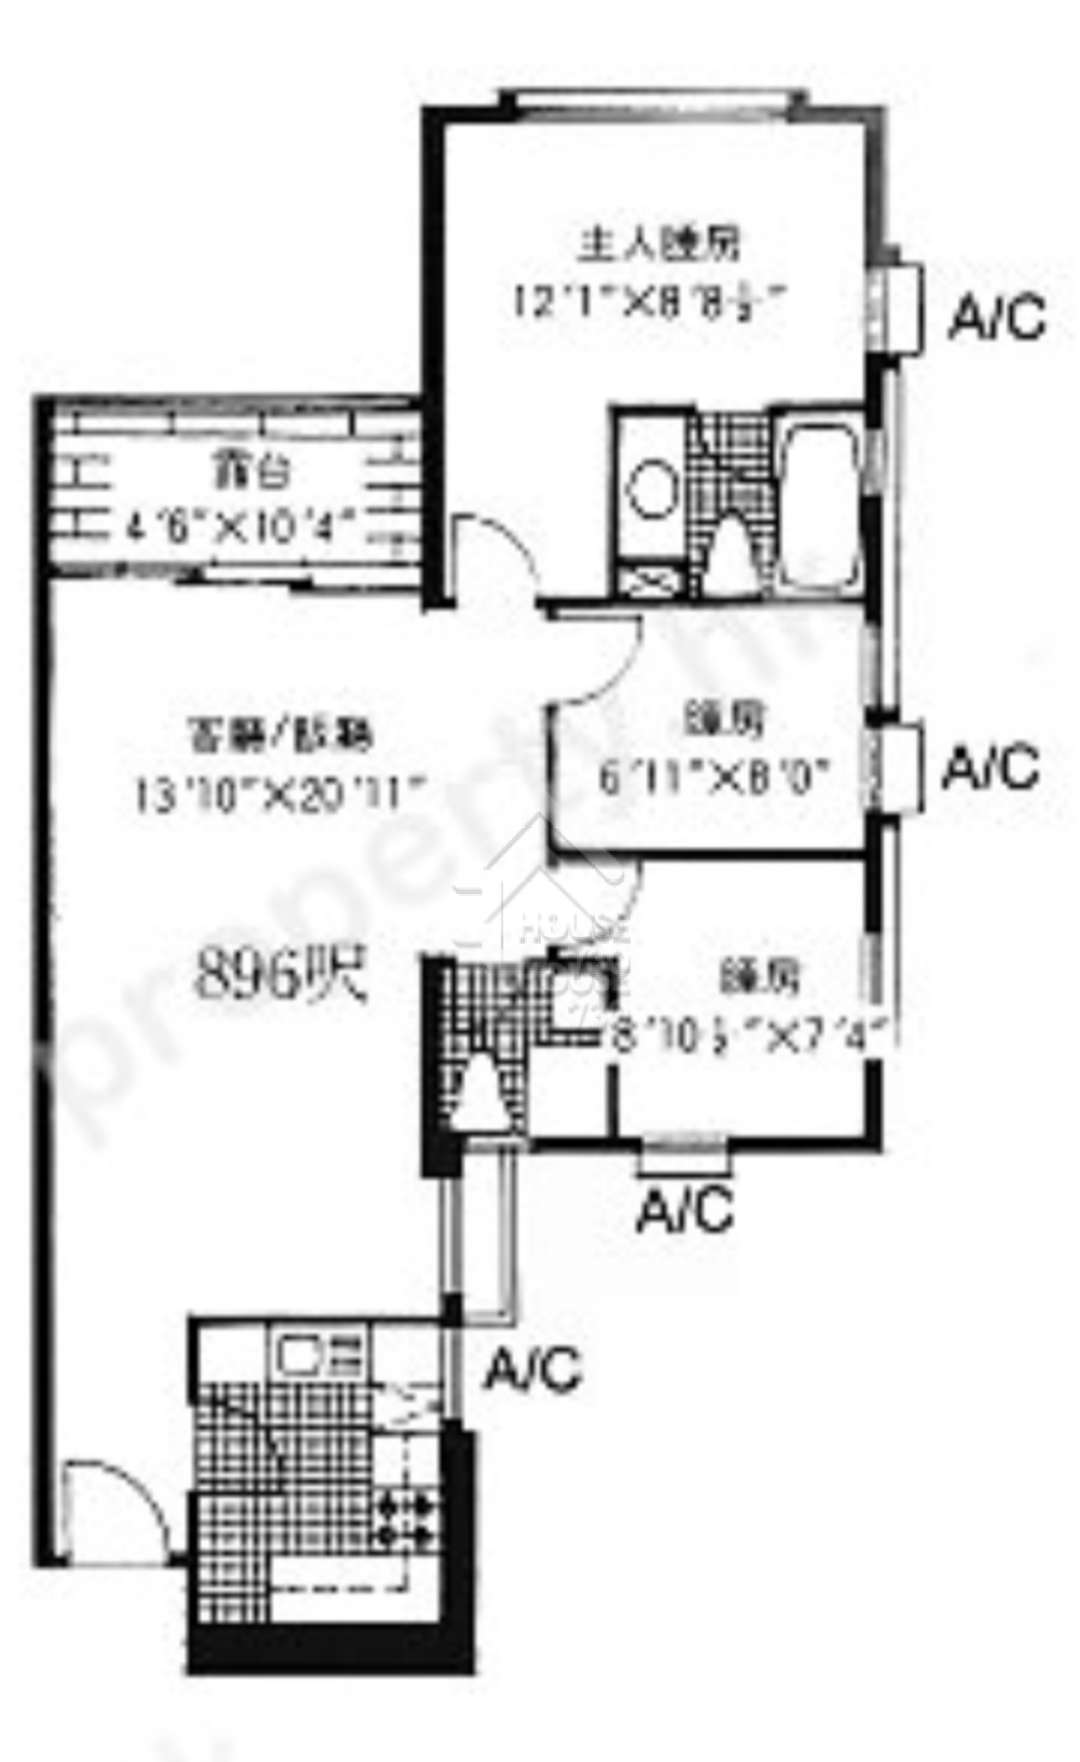 Sai Wan Ho 怡昌閣 Middle Floor House730-6607793